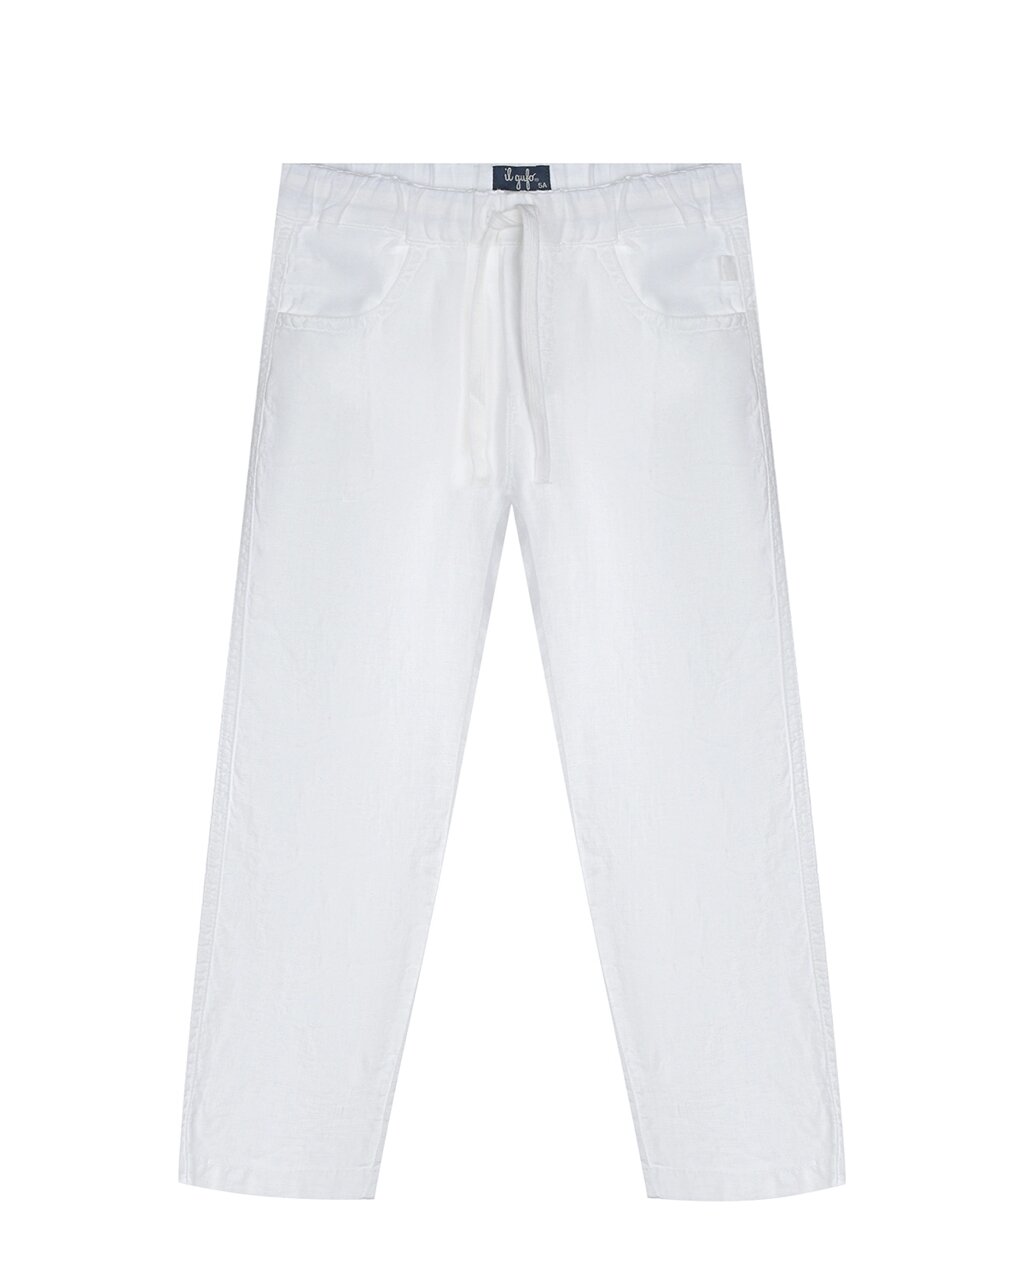 Белые льняные брюки IL Gufo от компании Admi - фото 1